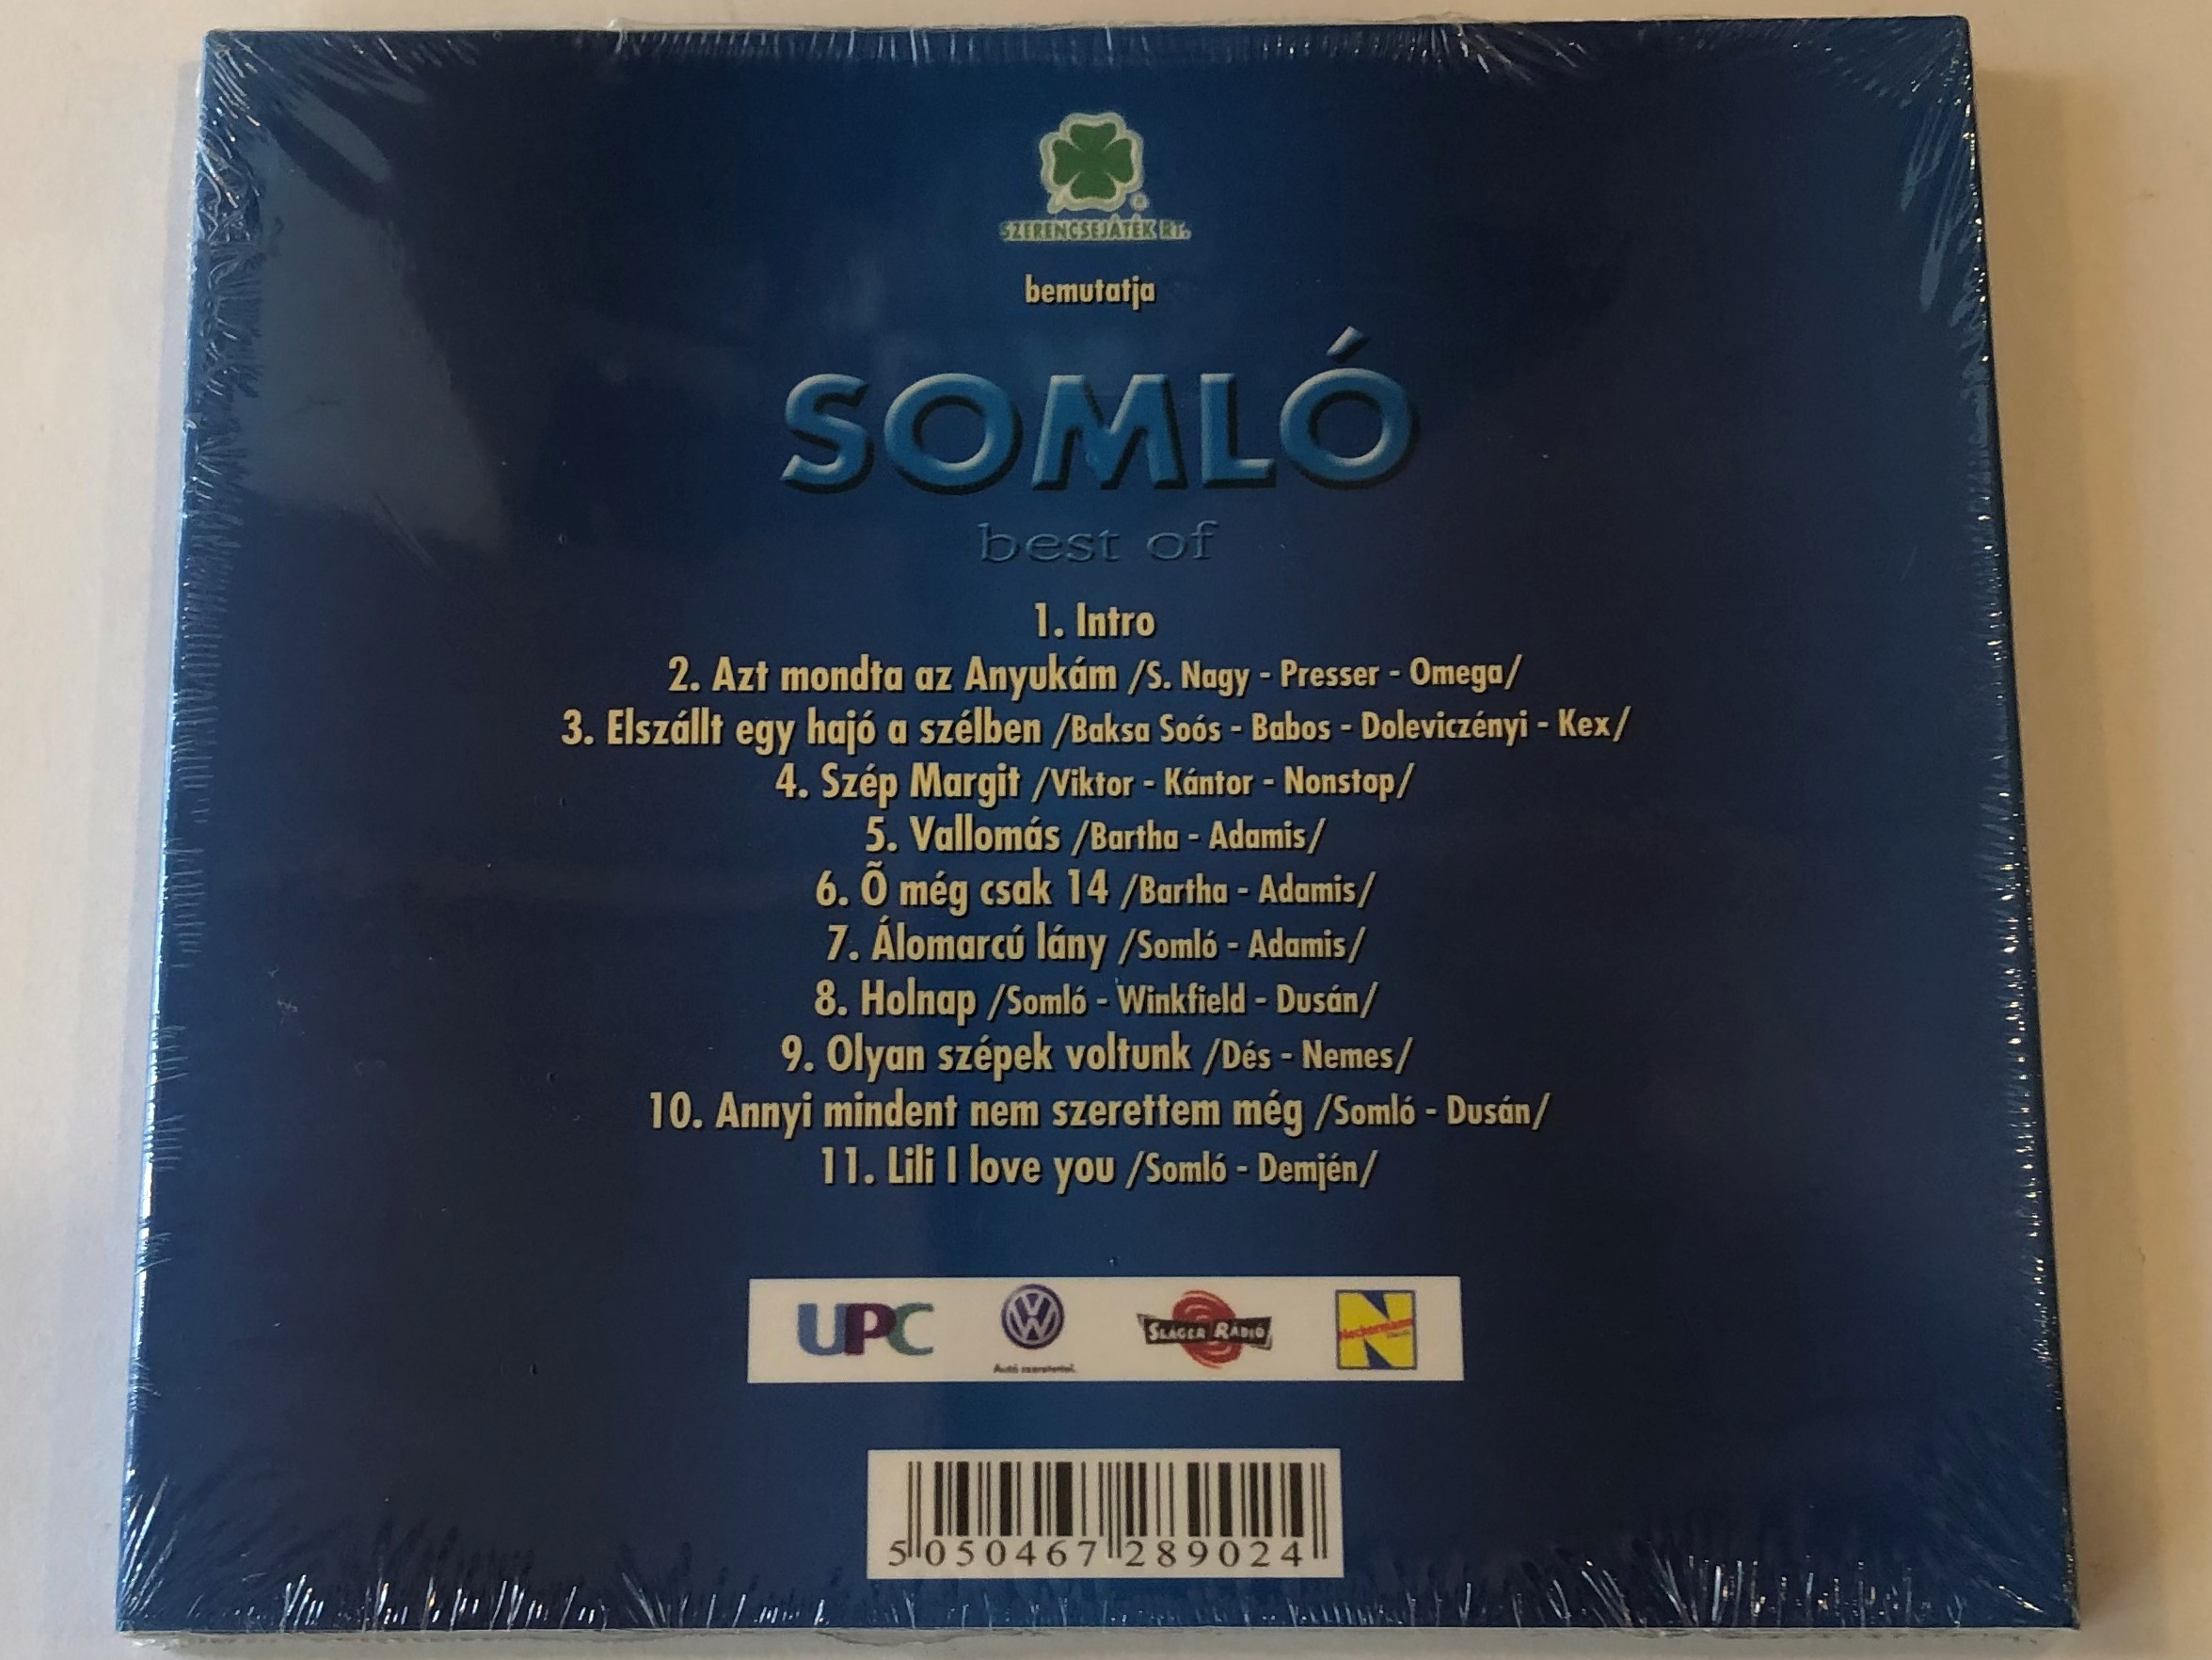 soml-best-of-audio-cd-5050467289024-2-.jpg